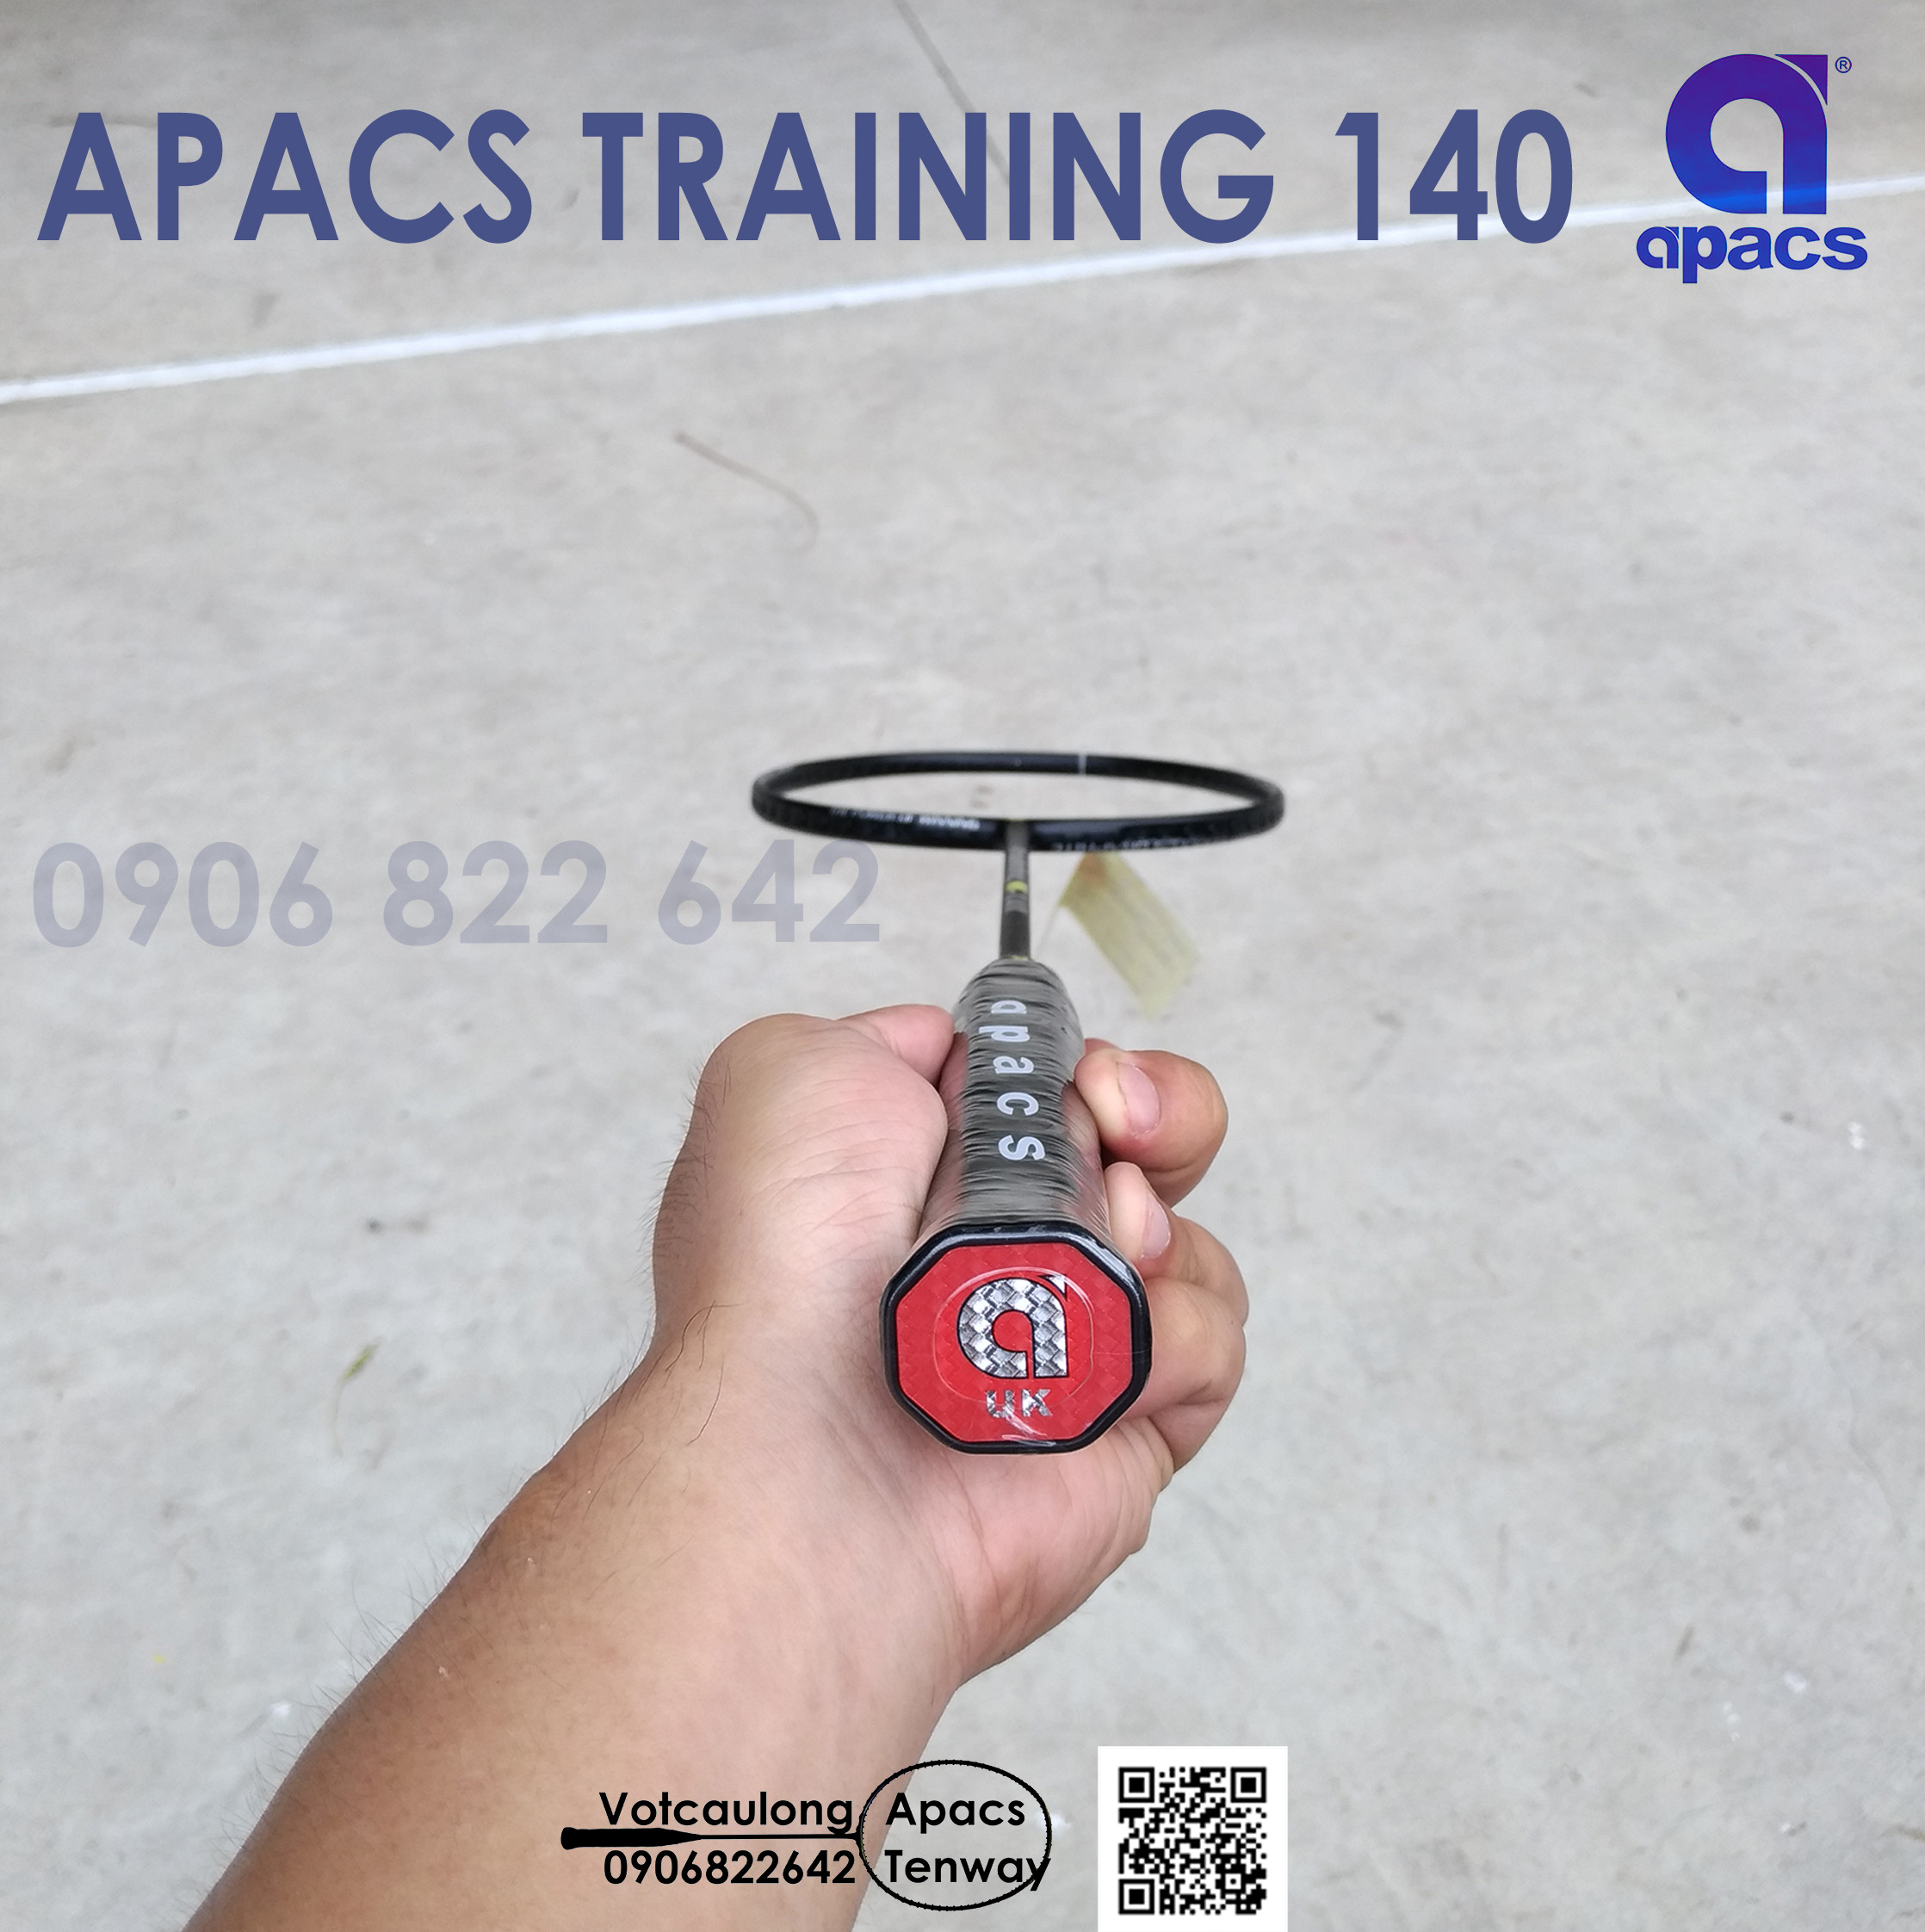 Vợt tập cầu lông Apacs Training w140 | Cải thiện khả năng điều vợt, tăng sức mạnh cho cú đánh